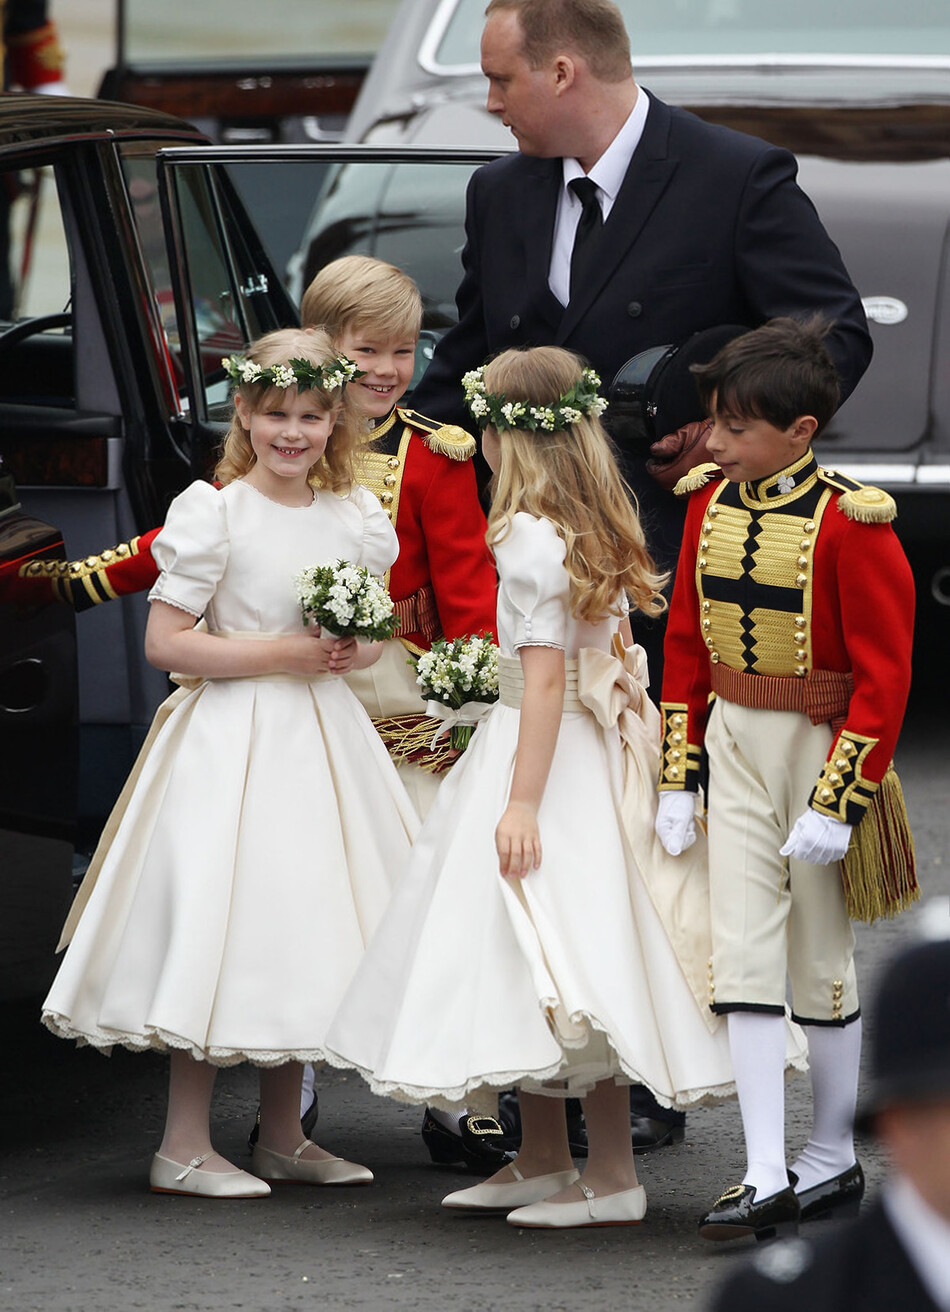 Леди Луиза Виндзор прибывает на королевскую свадьбу принца Уильяма с Кэтрин Миддлтон в Вестминстерском аббатстве 29 апреля 2011 года в Лондоне, Англия